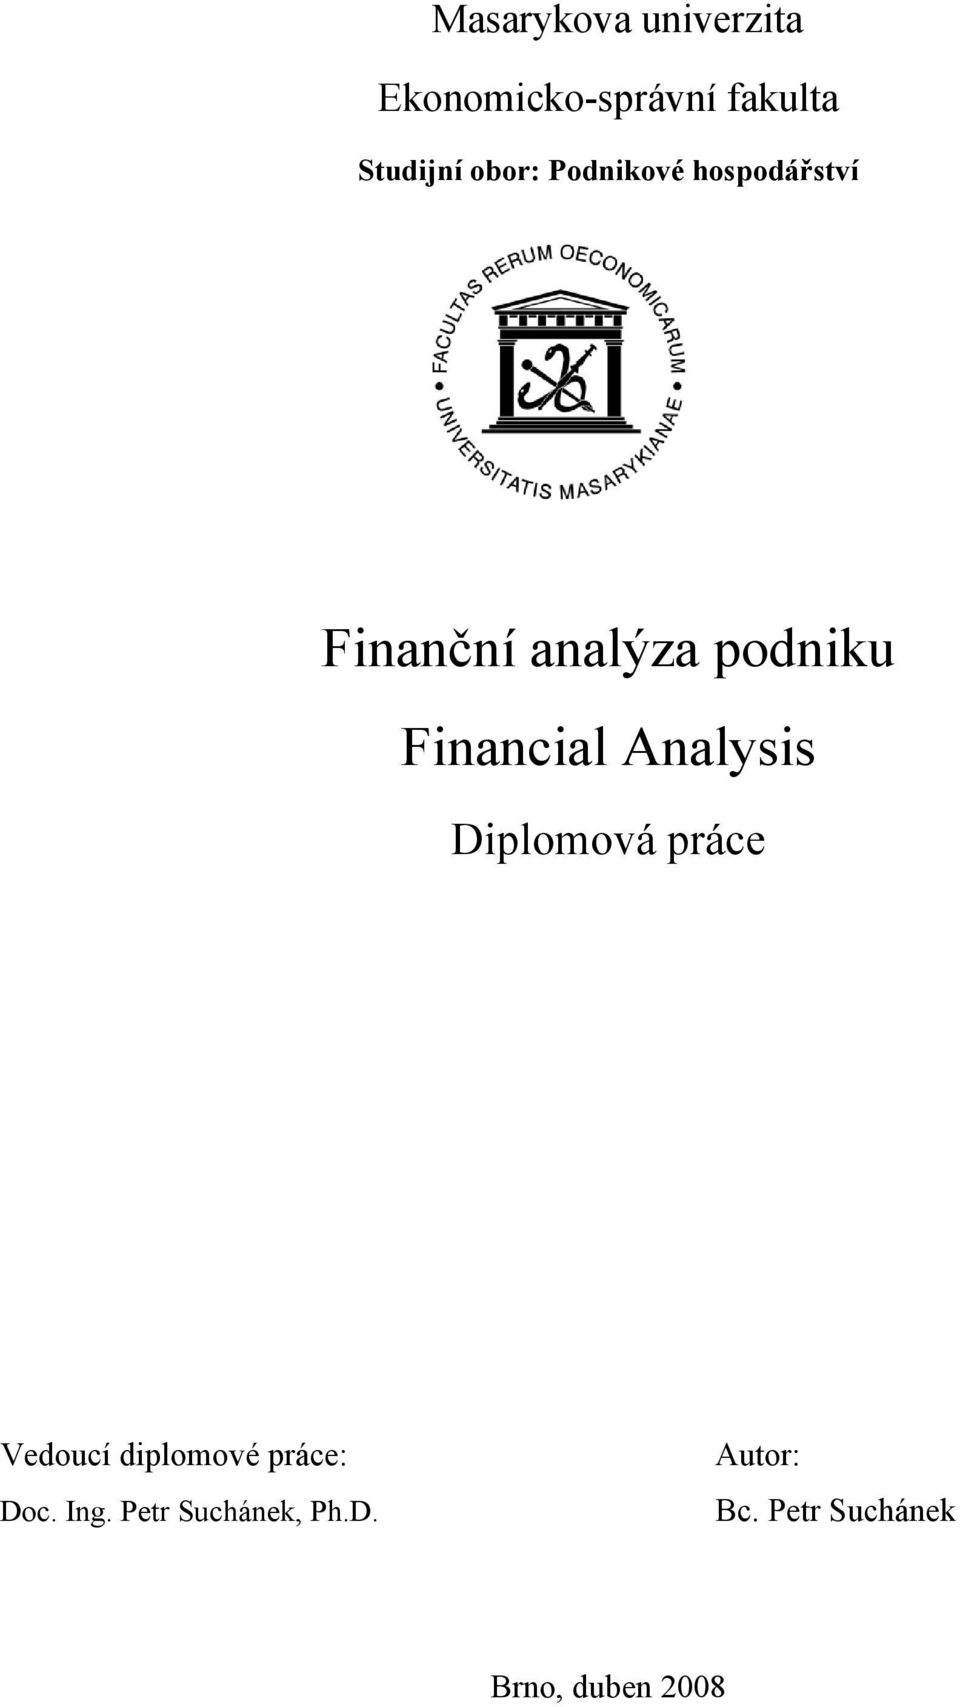 Financial Analysis Diplomová práce Vedoucí diplomové práce: